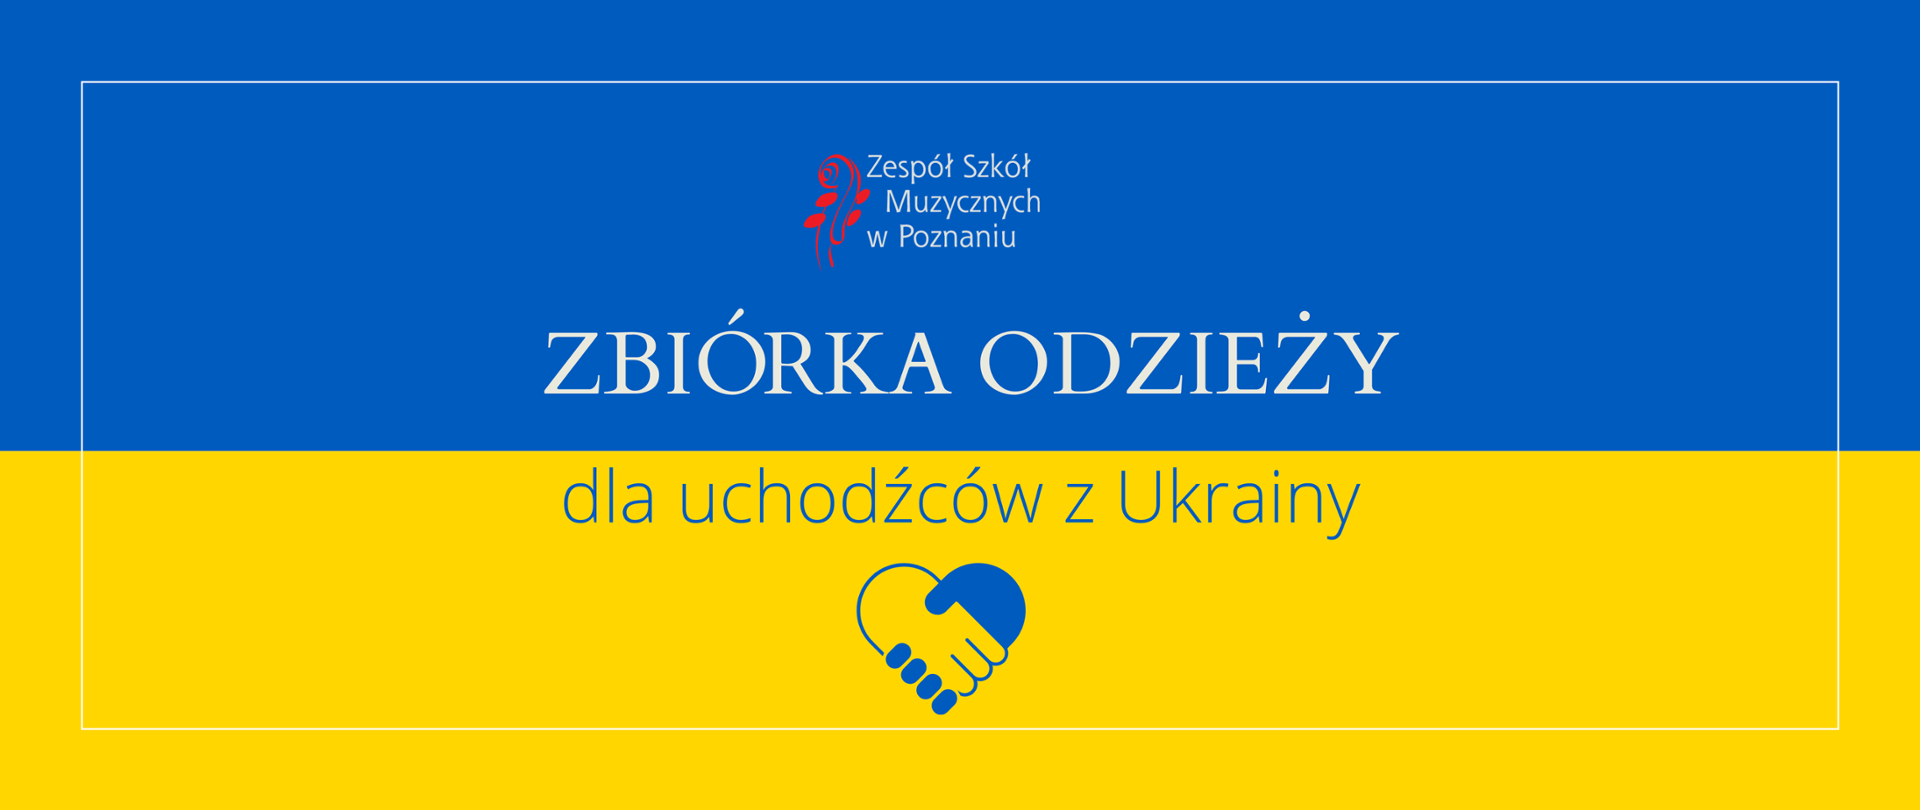 Grafika na tle barw Ukrainy z logo szkoły z tekstem \"Zbiórka odzieży dla uchodźców z Ukrainy\" oraz ikoną dłoni na środku"